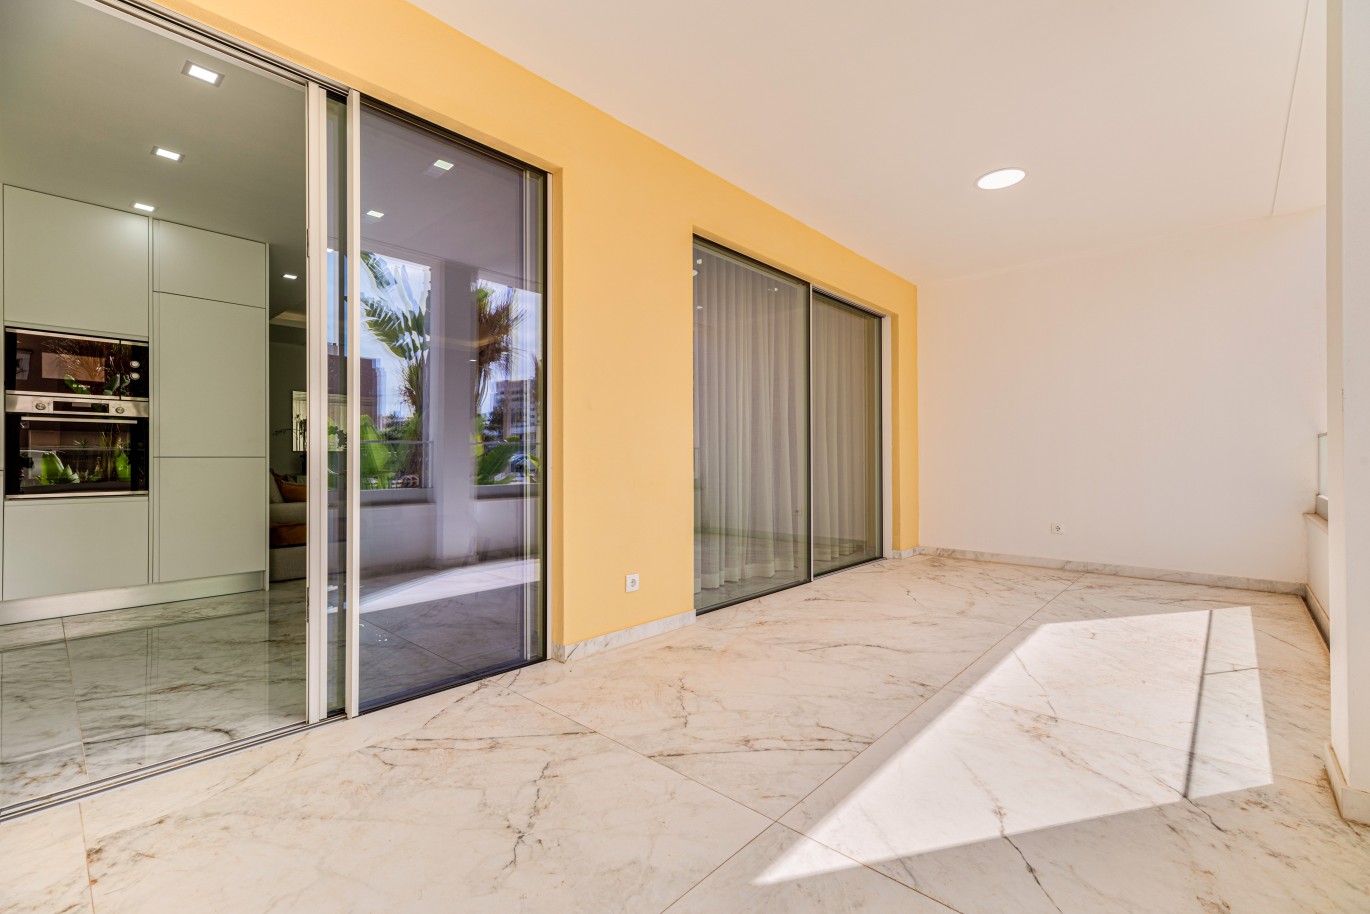 Apartamento, com terraço, para venda, em Lagos, Algarve_238149